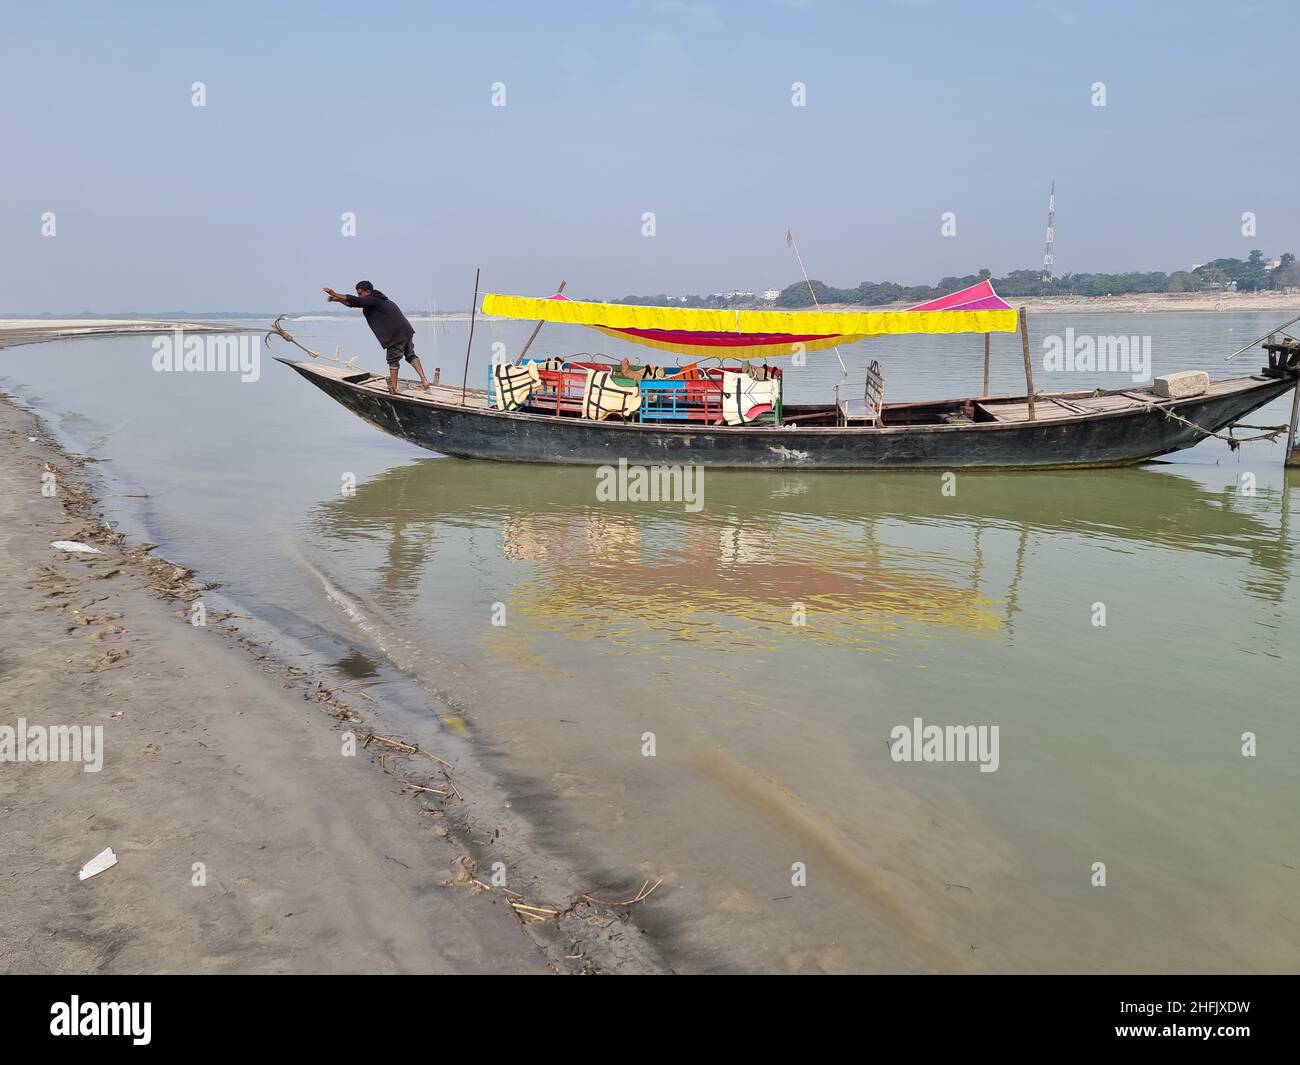 Lokale Holzboote fuhren entlang des Ufers des Meghna-Flusses und warteten auf Passagiere oder Touristen in Rajshahi, einer nordwestlichen Division in Bangladesch. Der Meghna-Fluss ist einer der größten Flüsse in Bangladesch, einer der drei Flüsse, die das Ganges-Delta bilden, das größte Delta der Erde, das sich bis in die Bucht von Bengalen erstreckt. Die Meghna entsteht durch den Zusammenfluss der Flüsse Surma und Kushiyara, die aus den hügeligen Regionen Ostindiens bis Chandpur stammen. Meghna wird hydrographisch als Oberes Meghna bezeichnet. Nachdem sich das Padma anschließt, wird es als die untere Meghna bezeichnet. Stockfoto